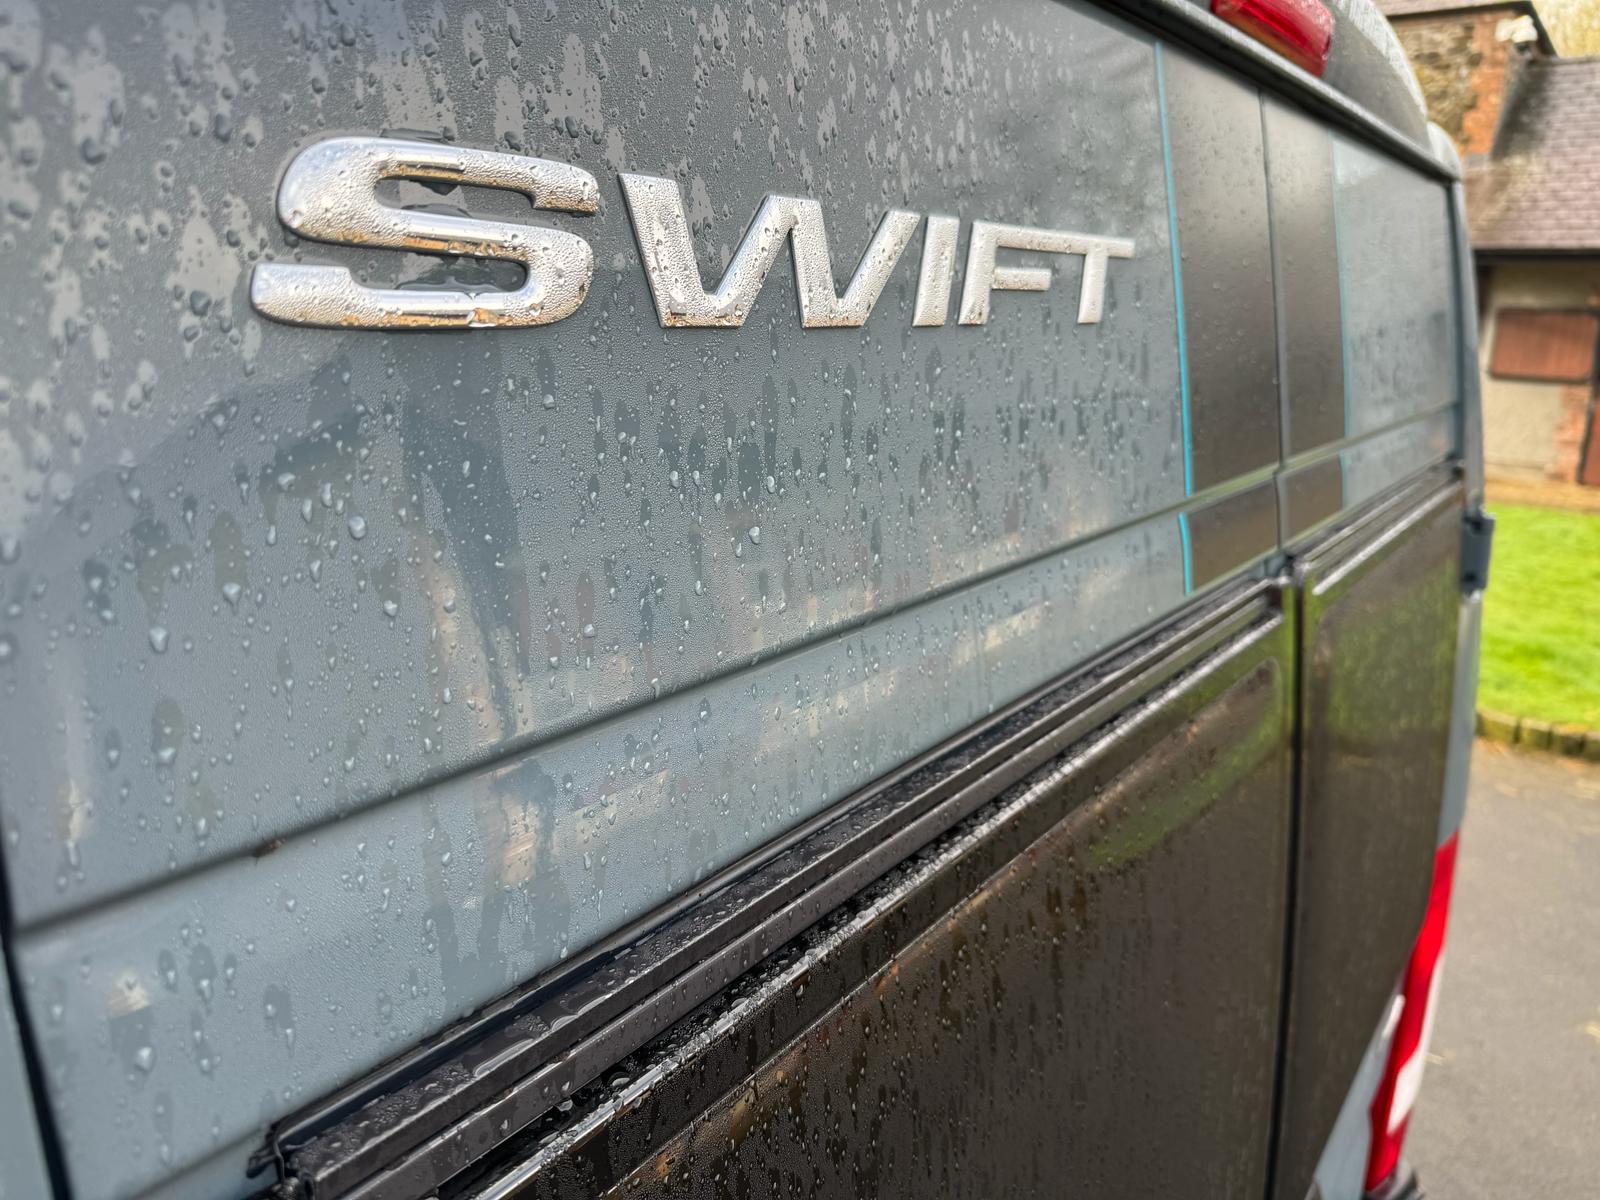 NEW Swift Carrera 132 - Automatic